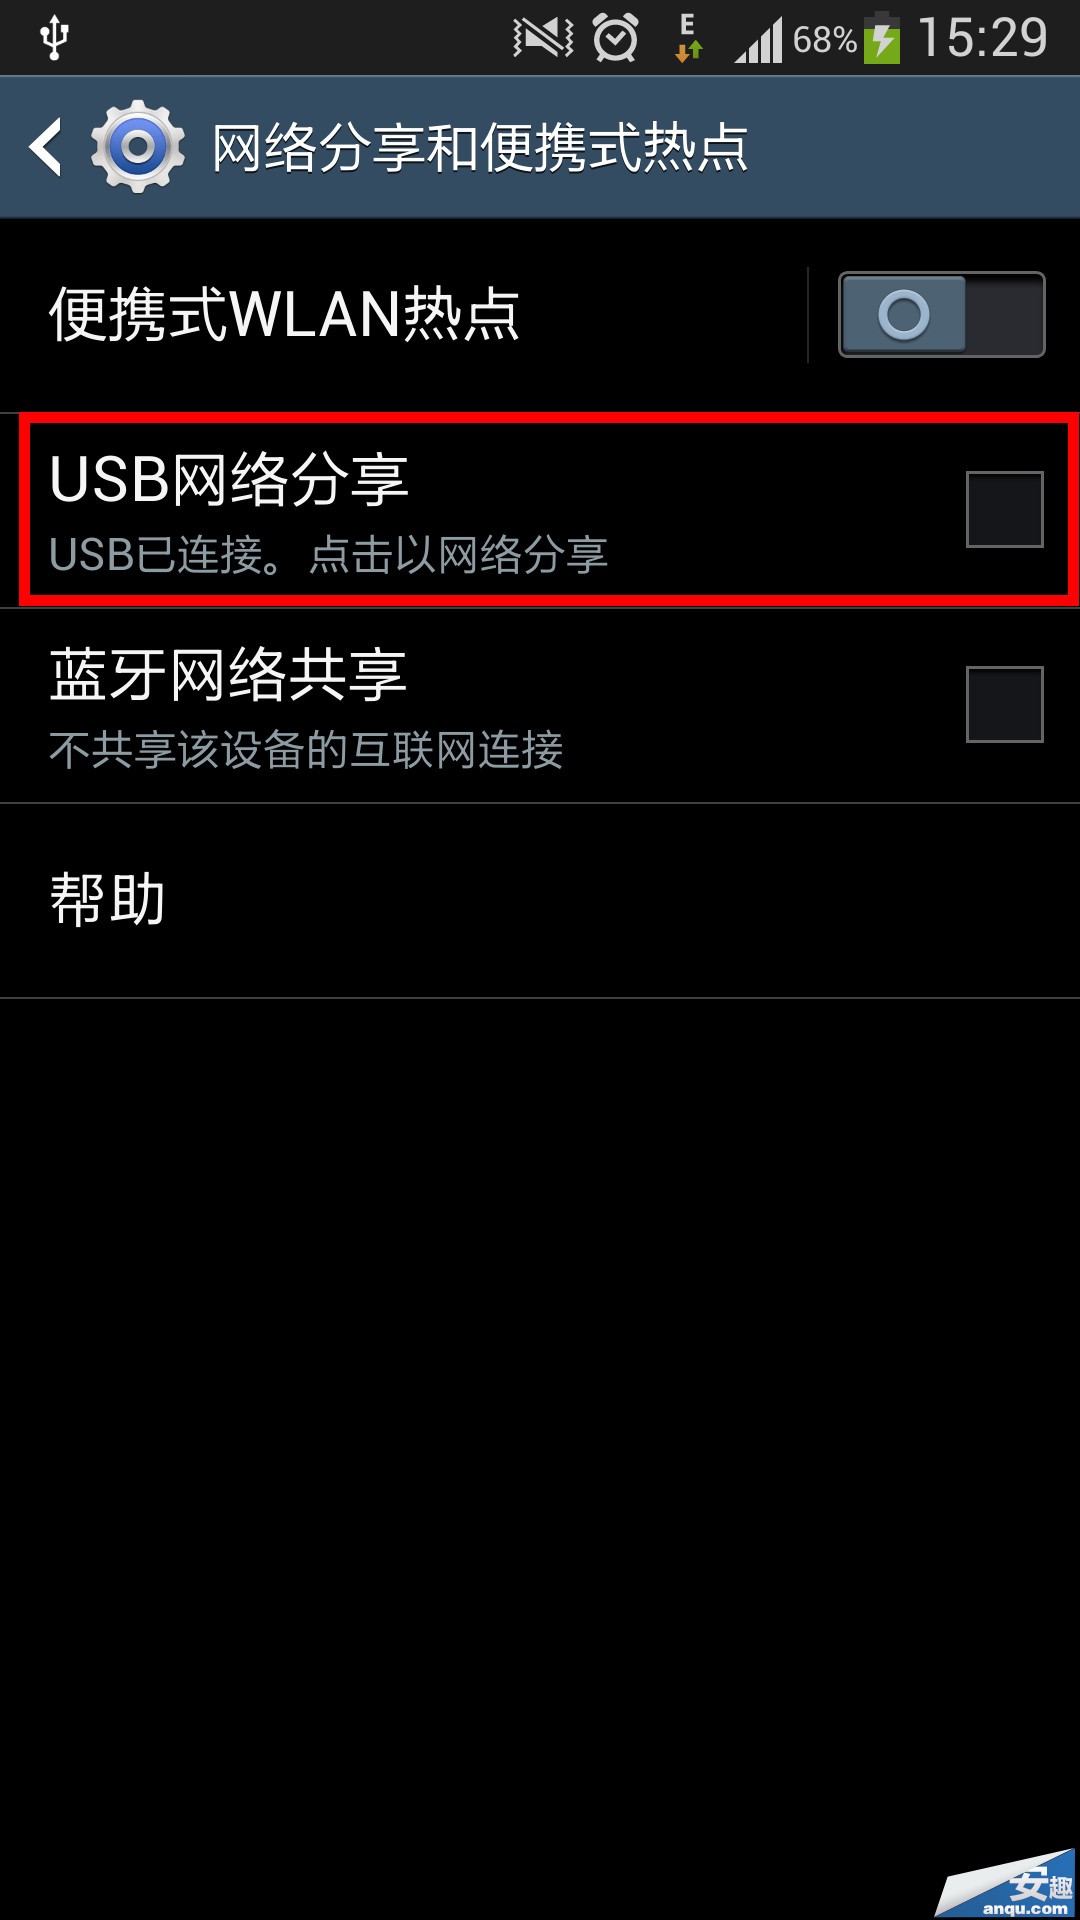 三星S4使用USB绑定上网功能14